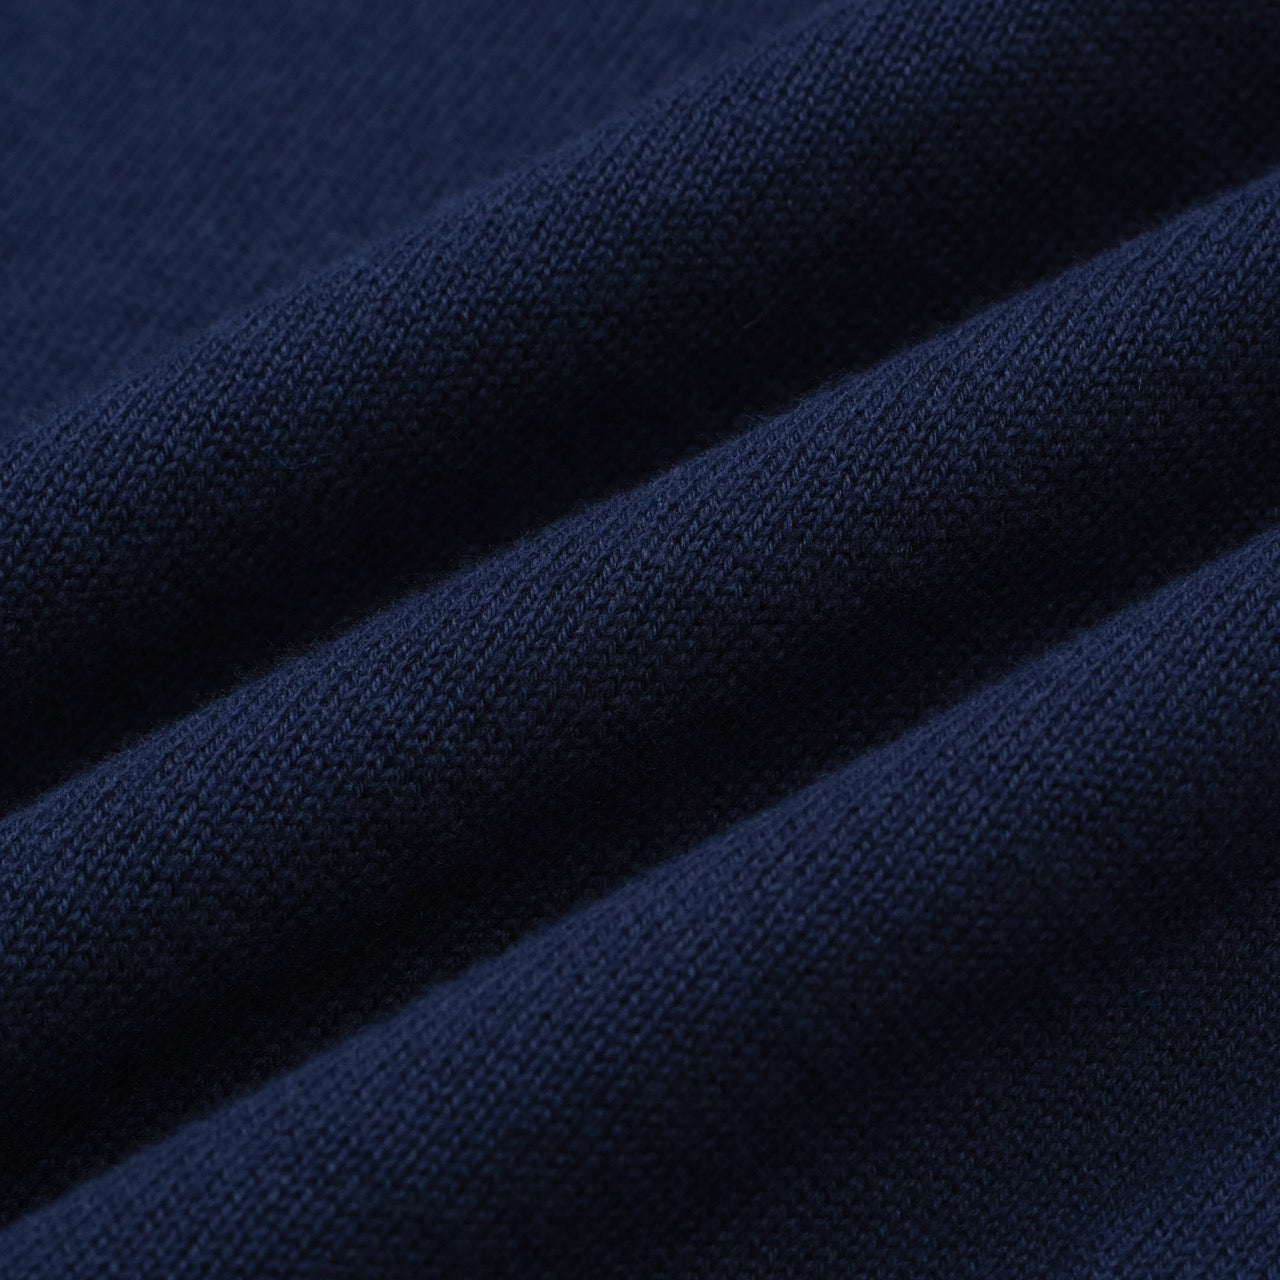 Men's Navy Blue Knitted Long Sleeve Wear